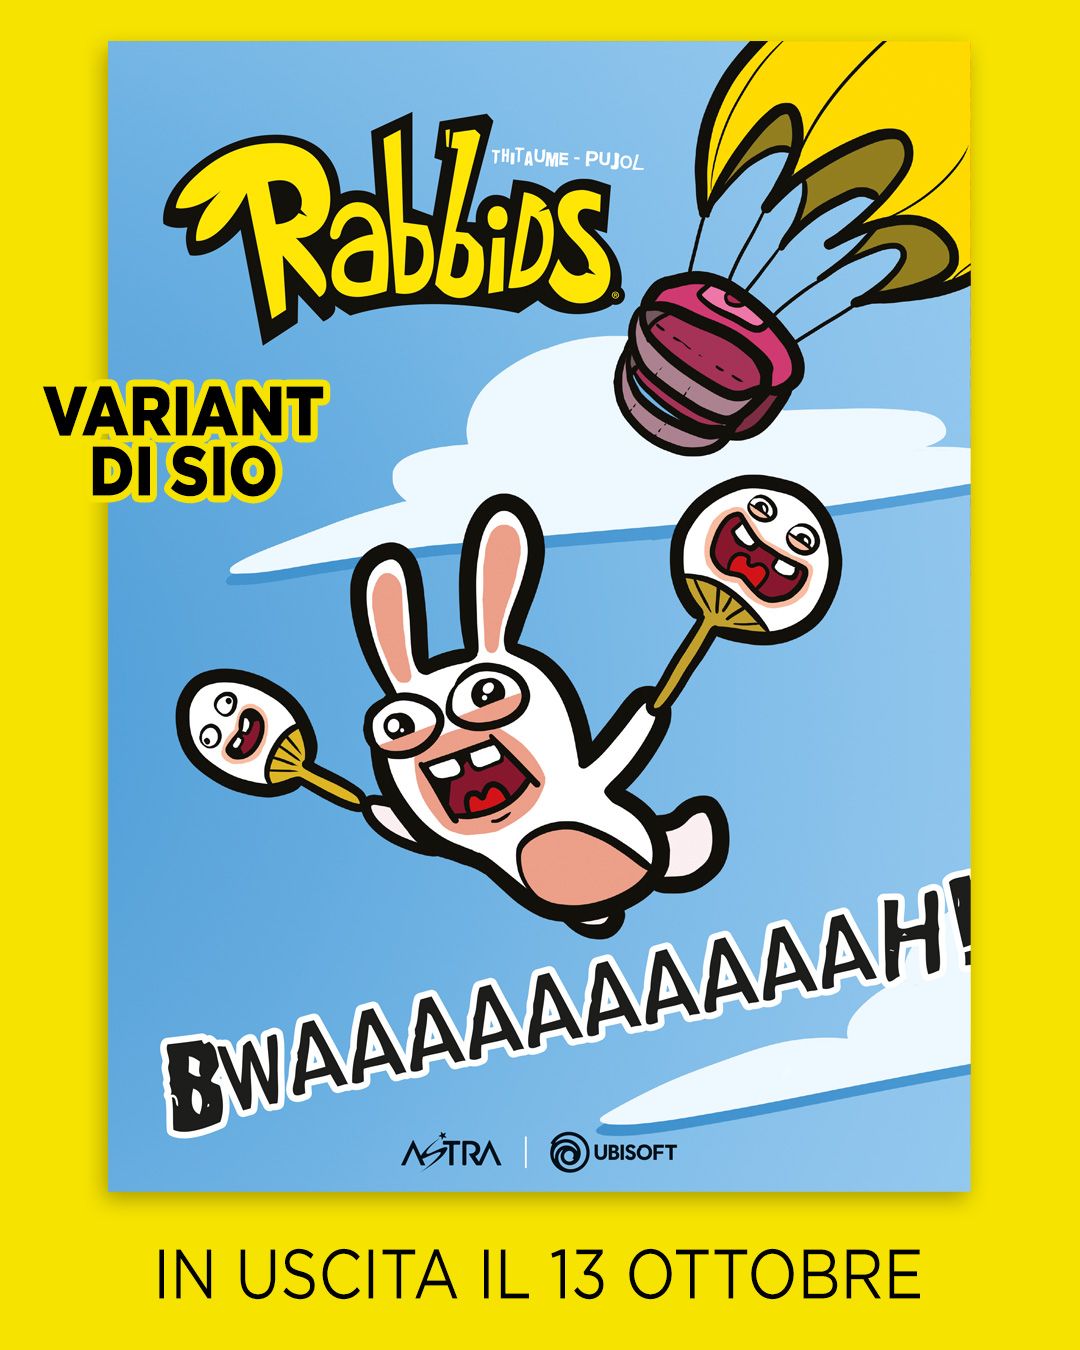 RABBIDS 1 variant cover di SIO